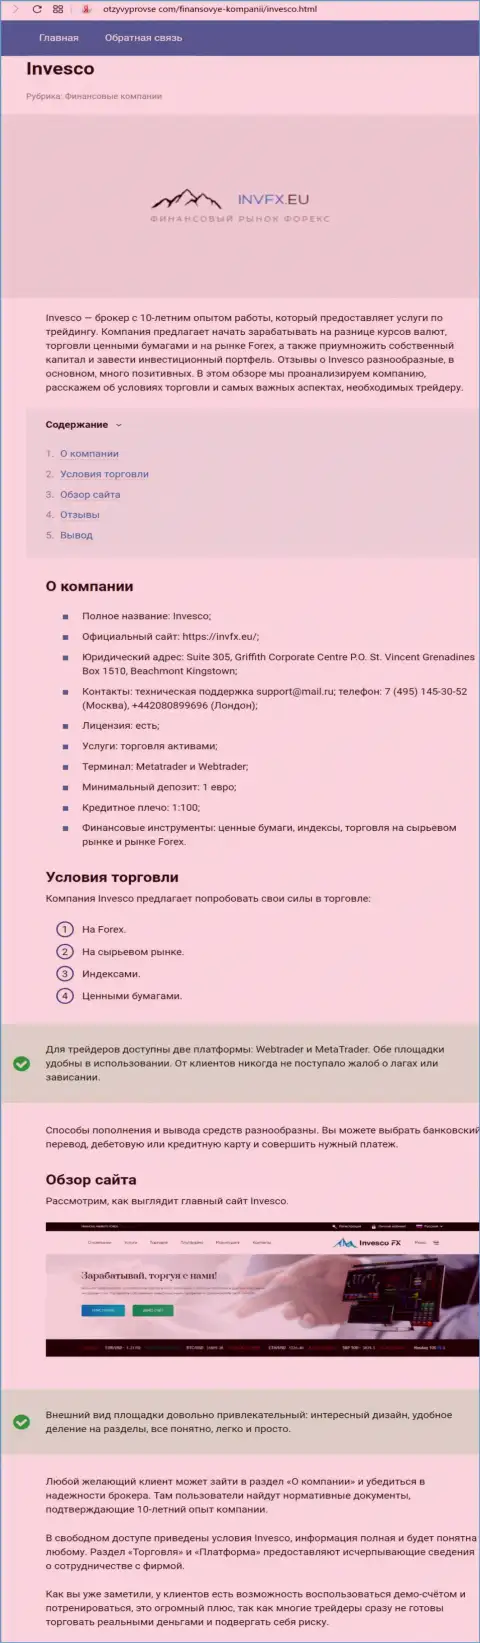 Подробнейшая информация о форекс дилинговой организации INVFX на страницах web-ресурса OtzyvyProVse Com